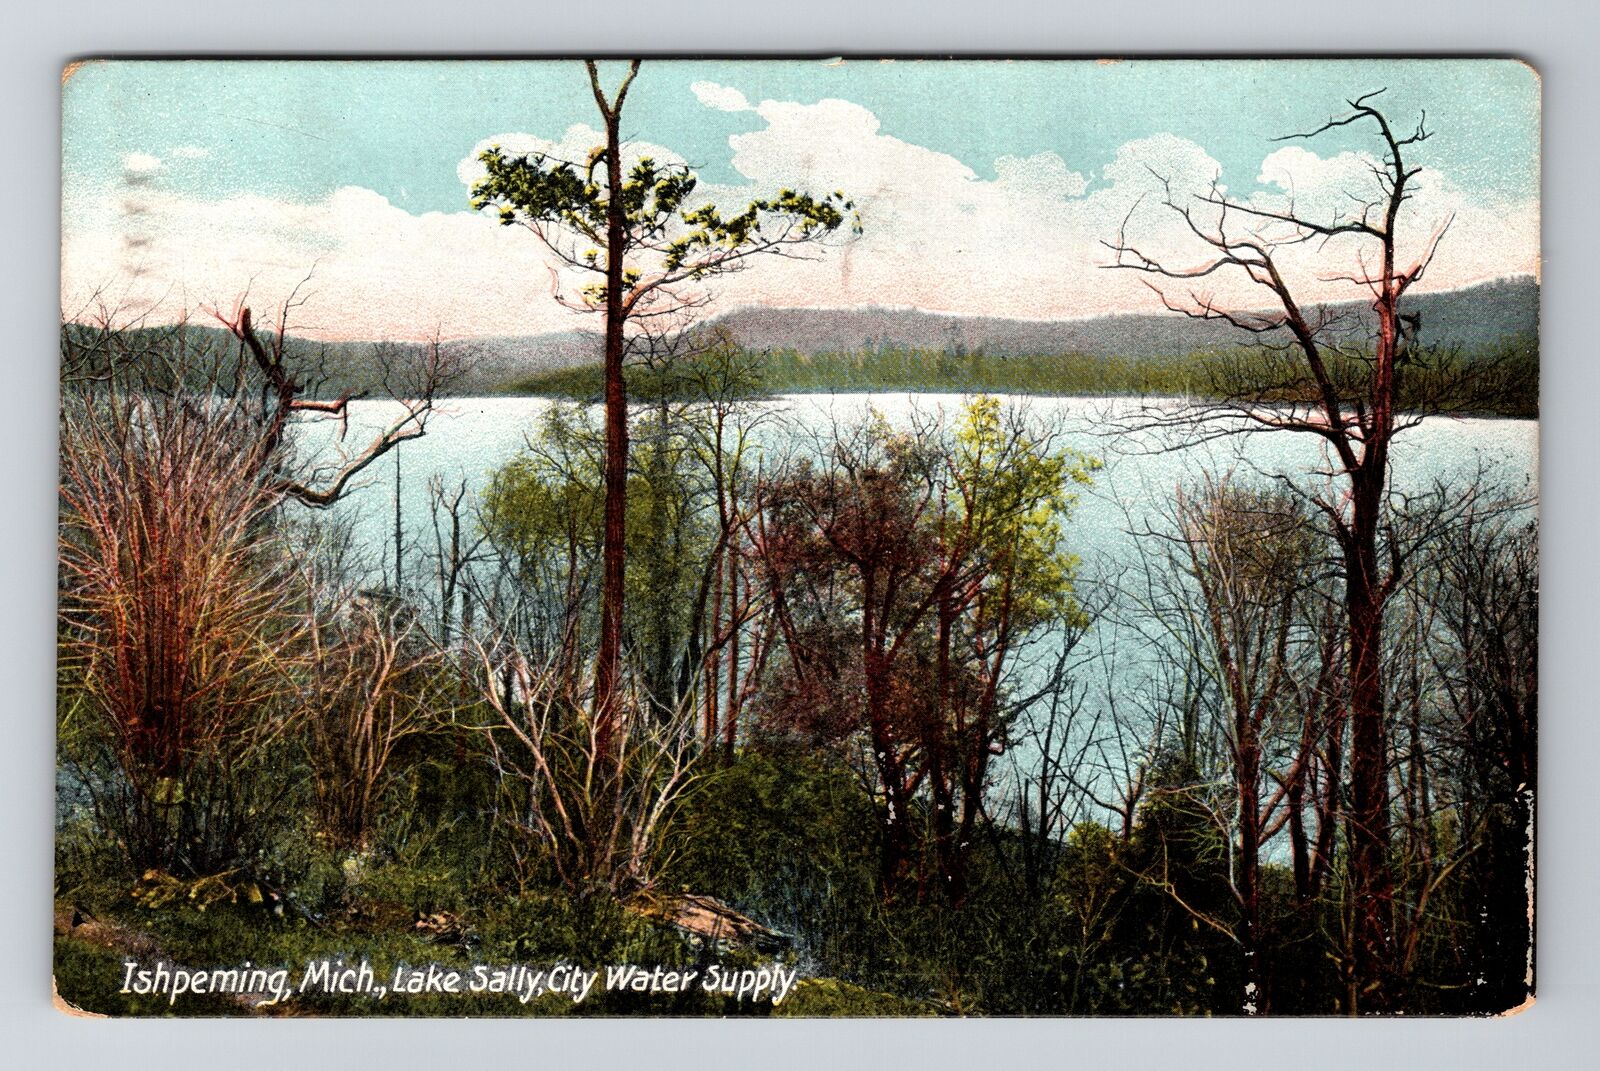 Ishpeming MI-Michigan, Lake Sally, City Water Supply, Vintage Postcard